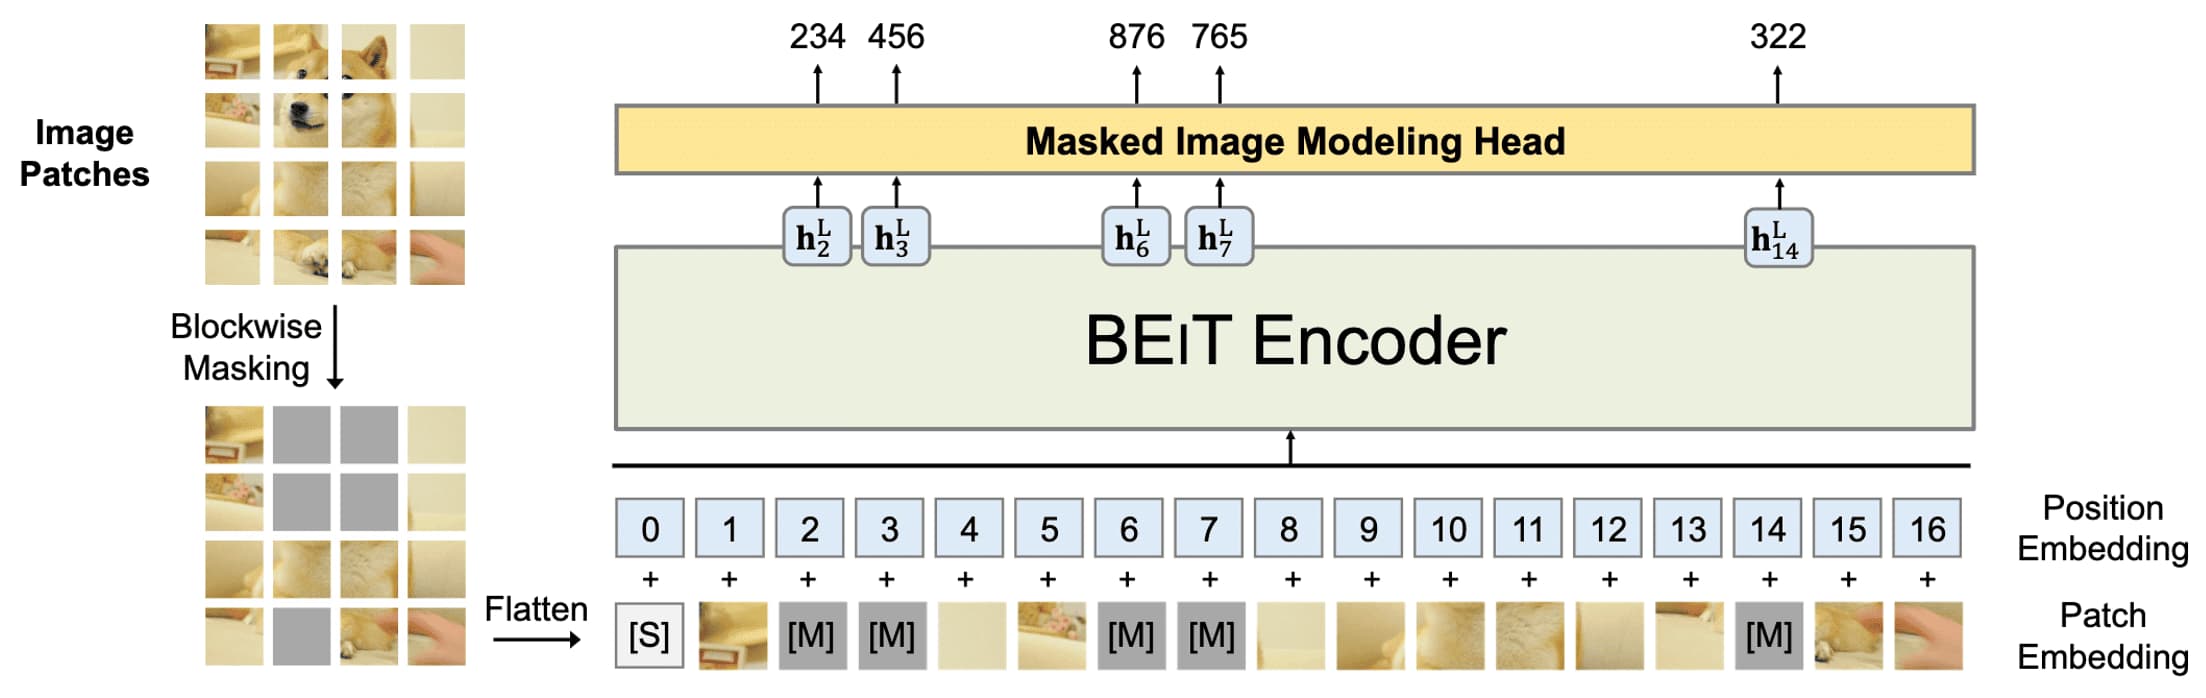 Masked Image Modeling of BEiT